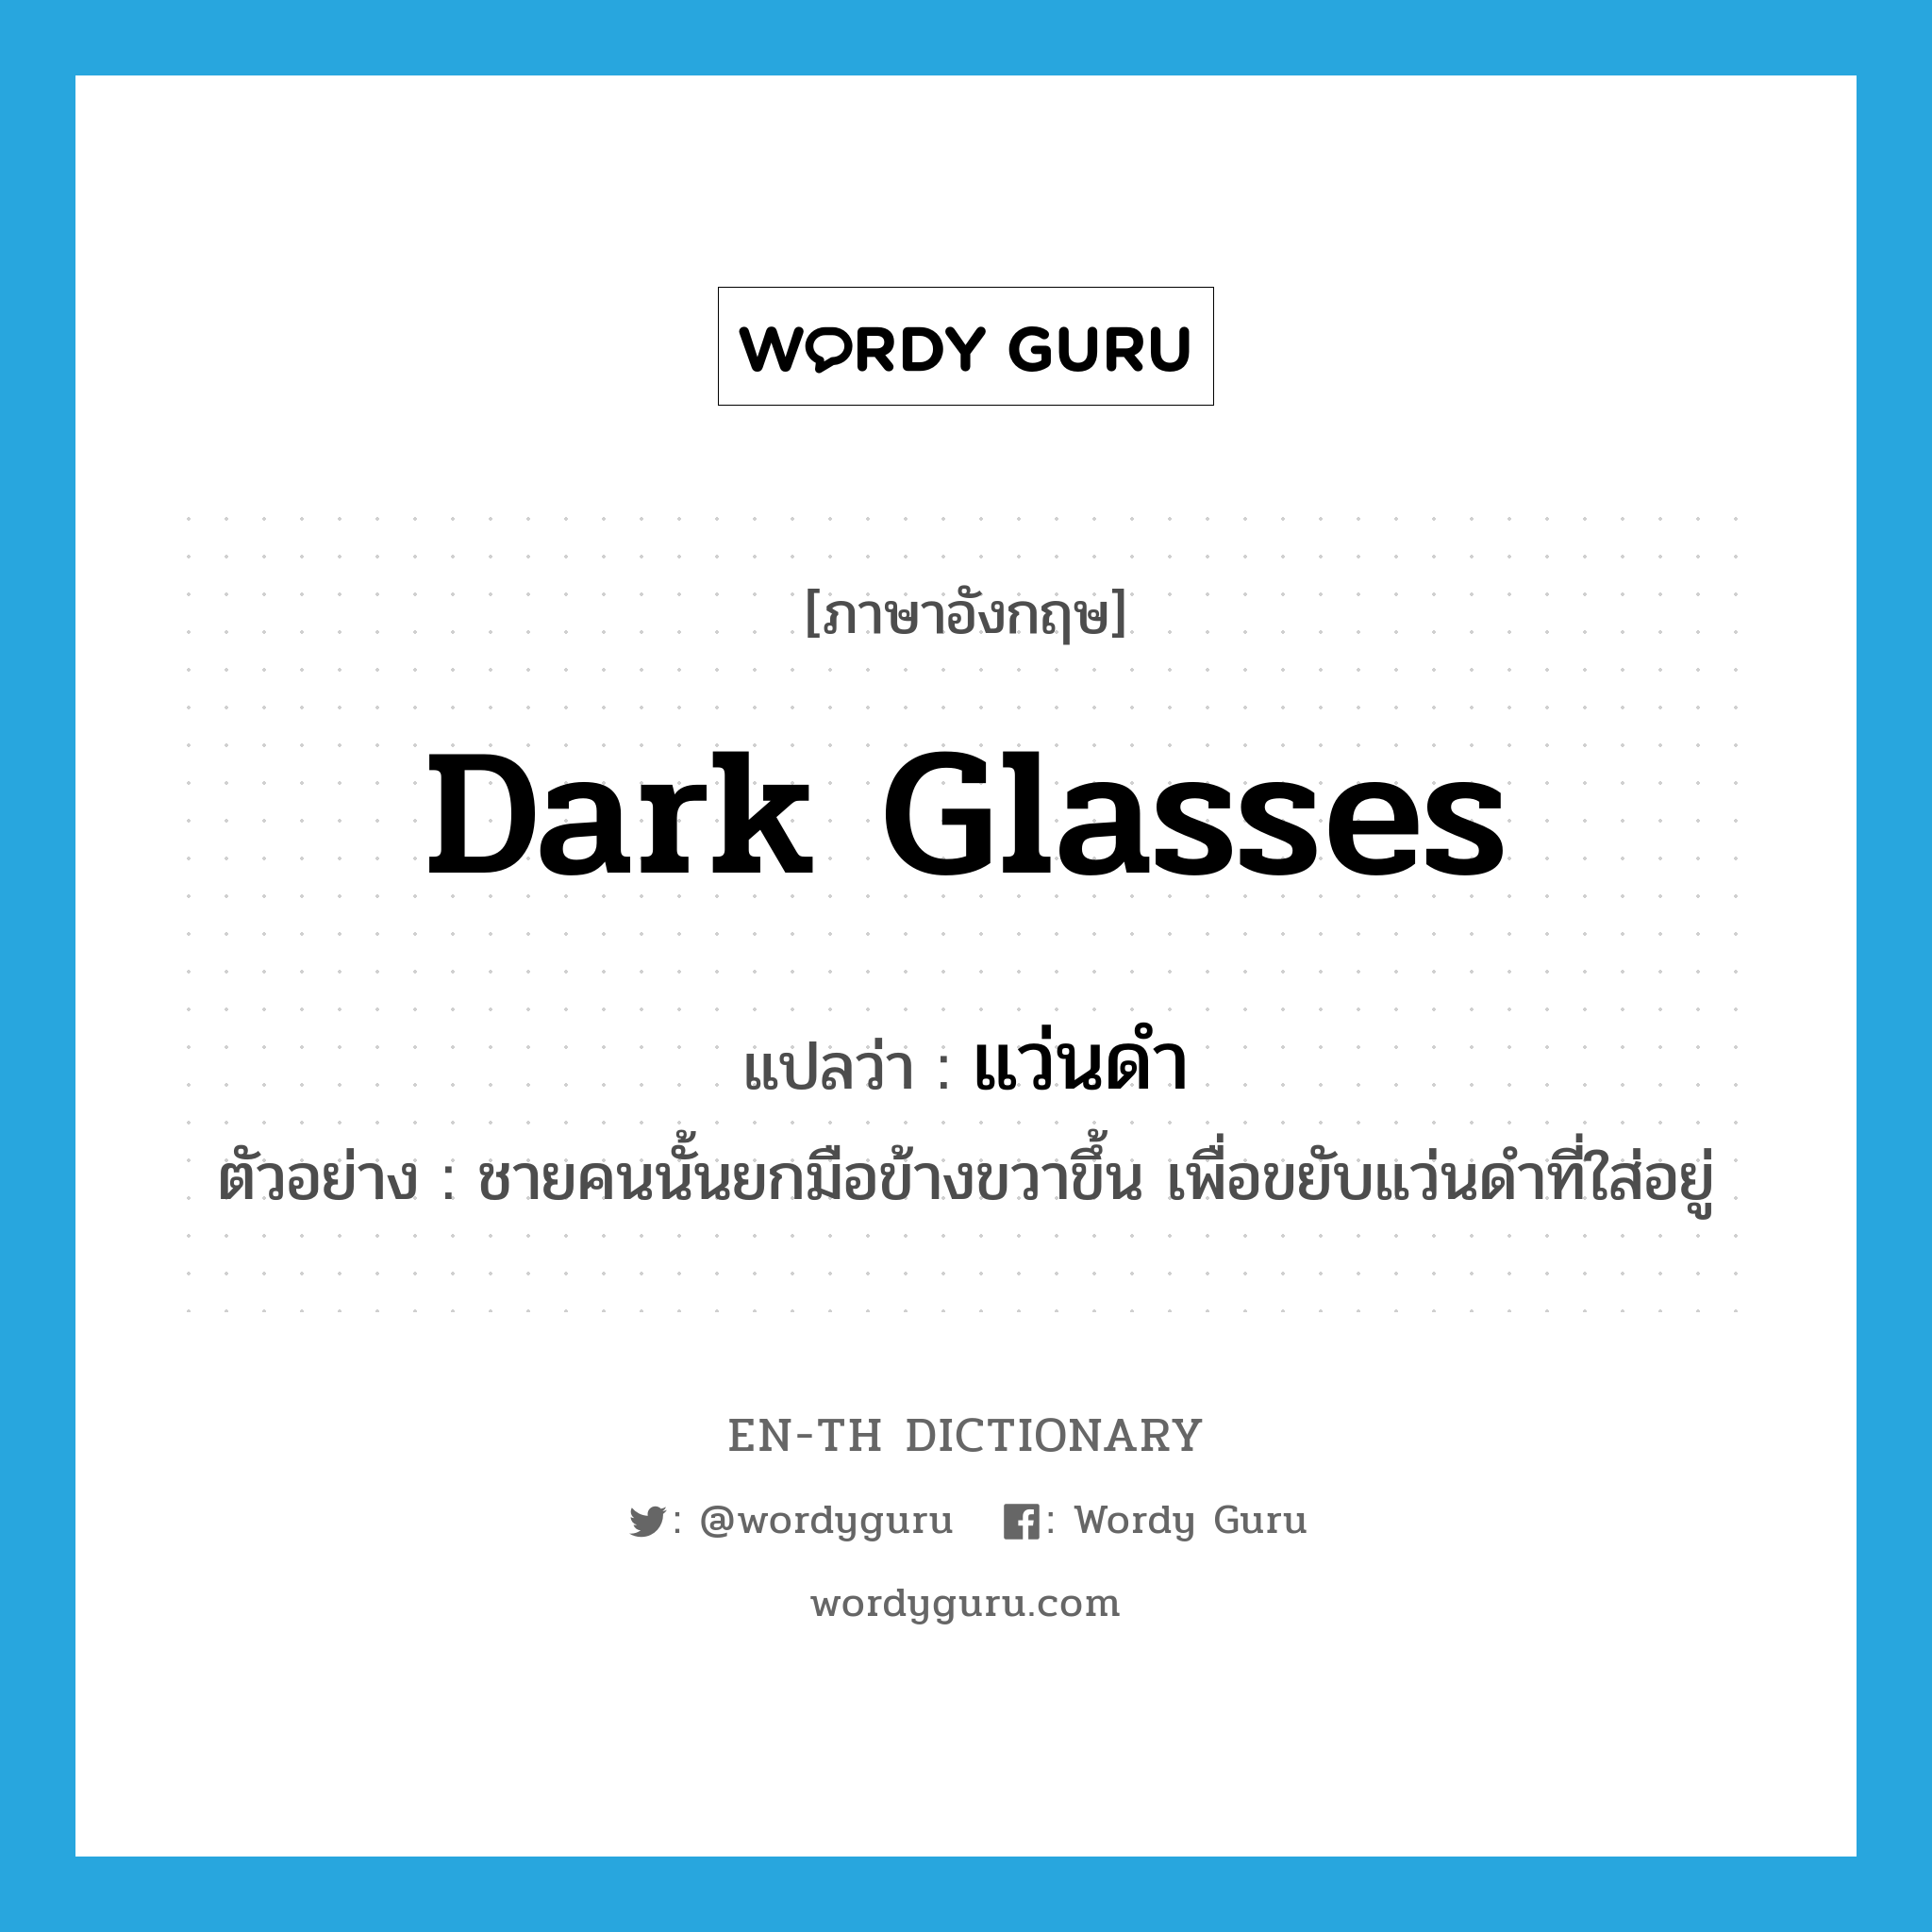 dark glasses แปลว่า?, คำศัพท์ภาษาอังกฤษ dark glasses แปลว่า แว่นดำ ประเภท N ตัวอย่าง ชายคนนั้นยกมือข้างขวาขึ้น เพื่อขยับแว่นดำที่ใส่อยู่ หมวด N